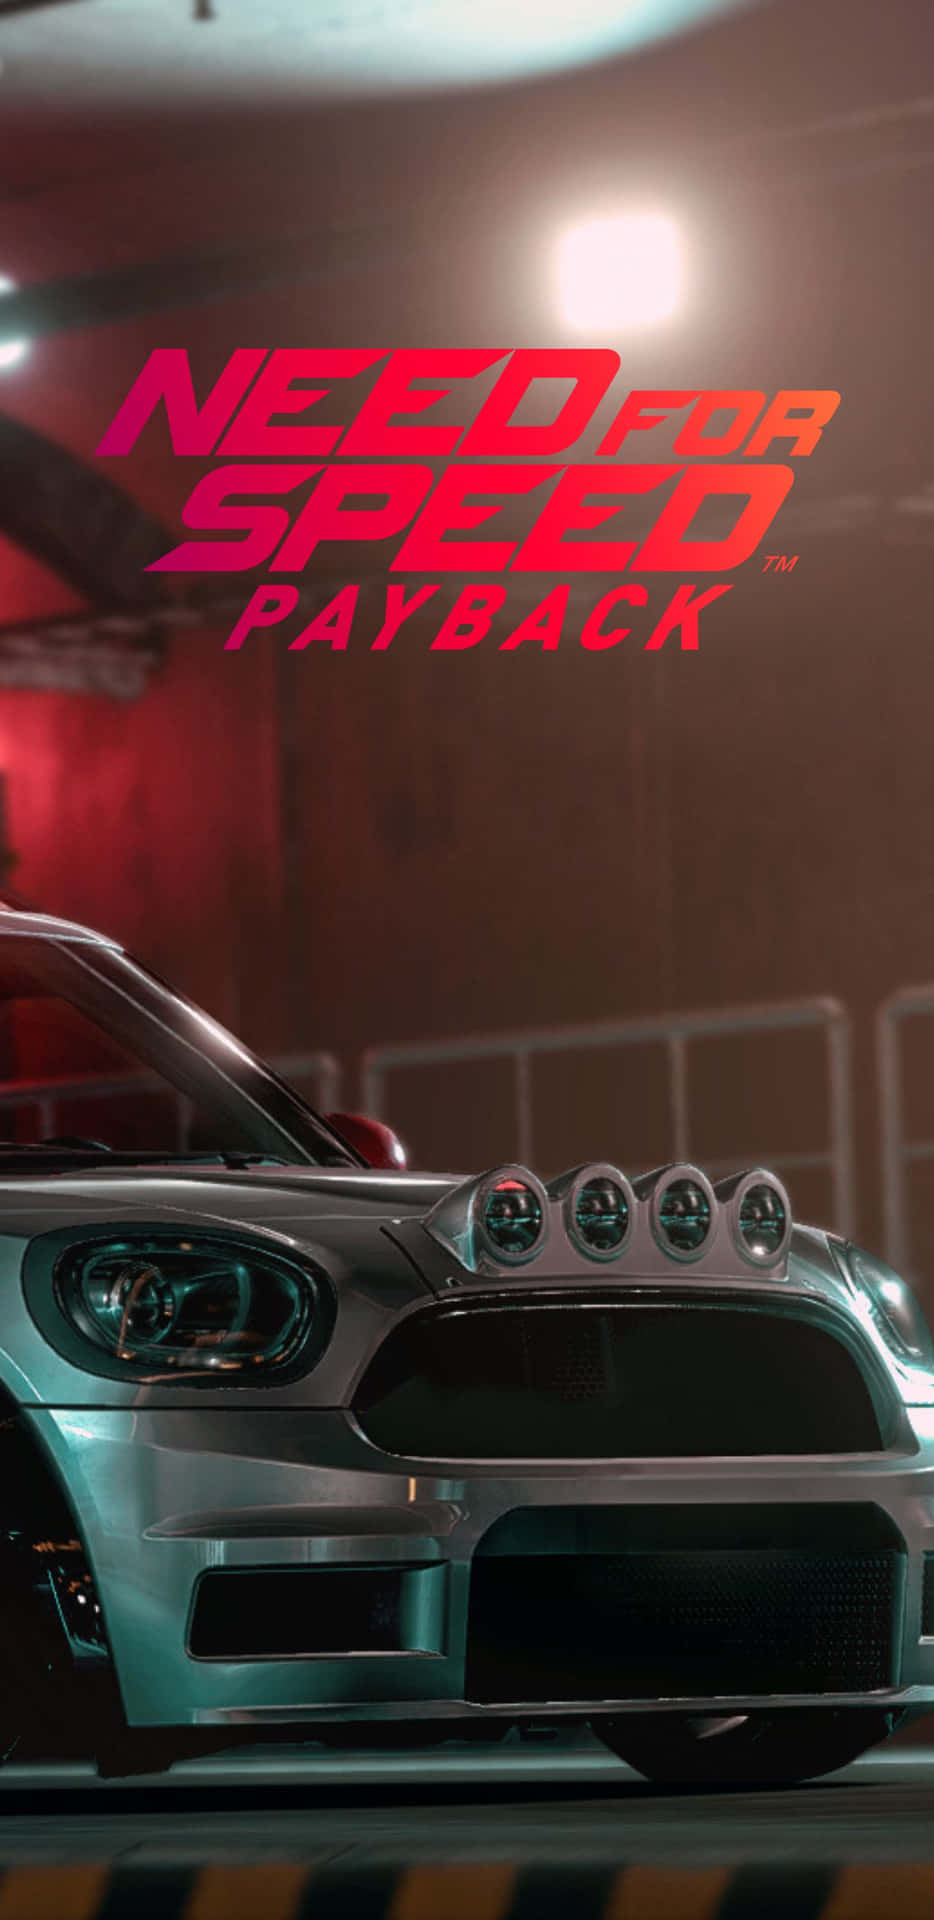 Disfrutade La Emoción De Need For Speed Payback En El Pixel 3xl.